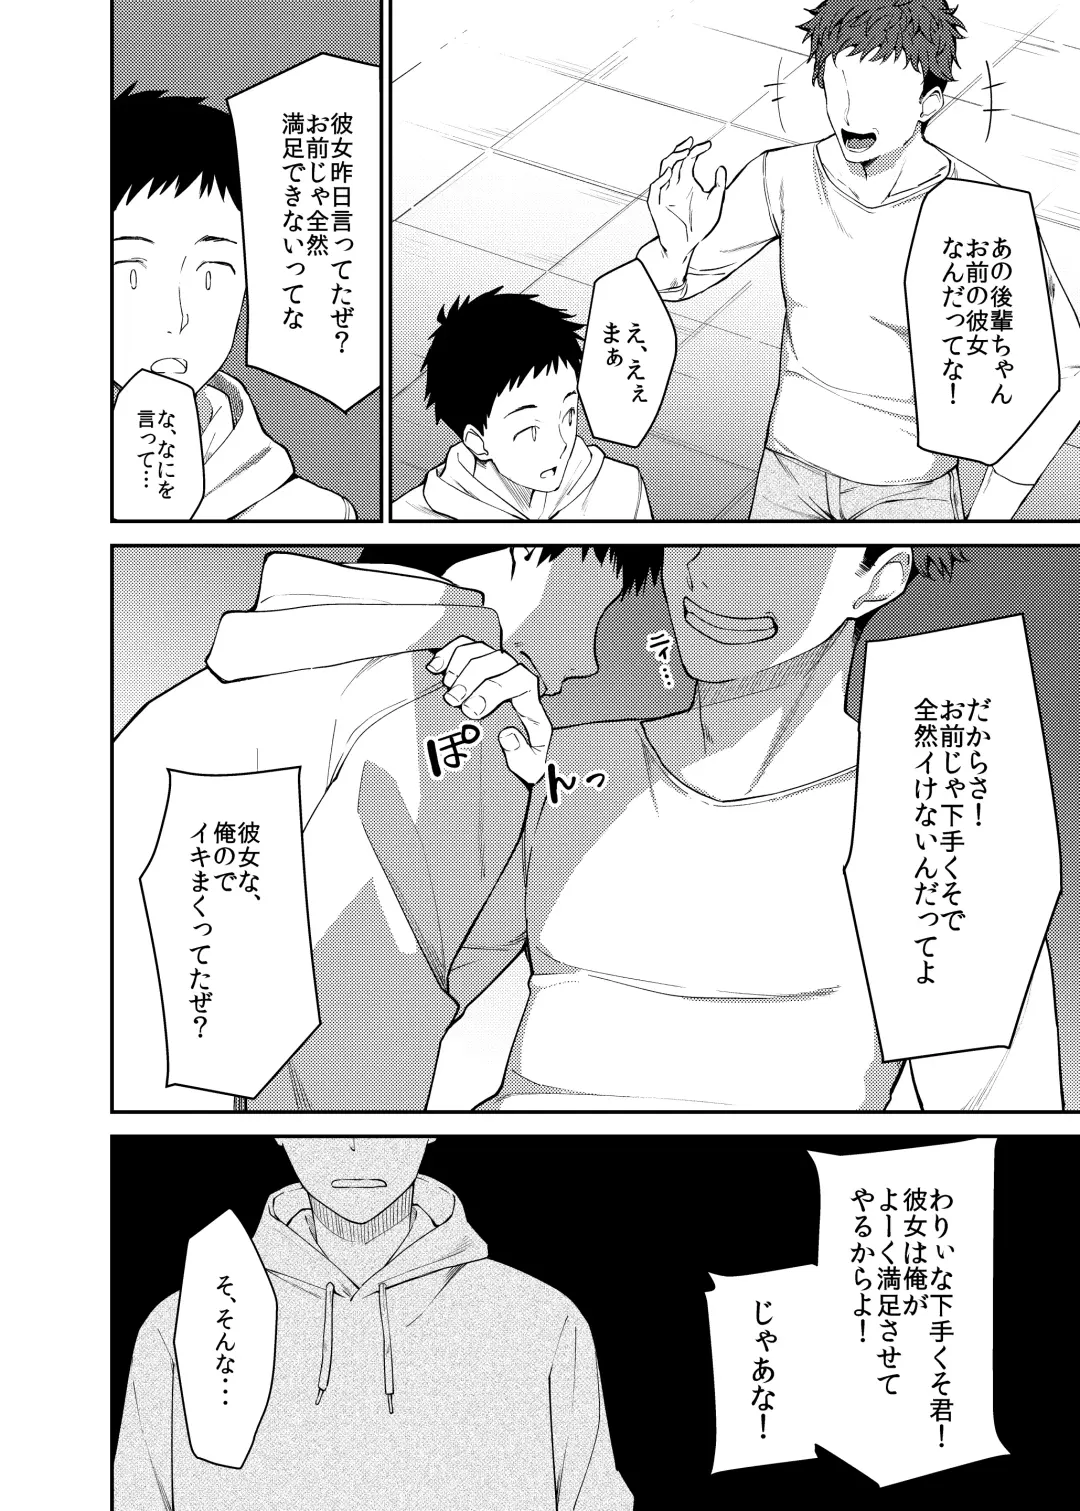 [Sekine Hajime] Kanojo wo natorareta boku ga baitosei no senpai ni sex wo ohietemorau hanashi Fhentai.net - Page 5